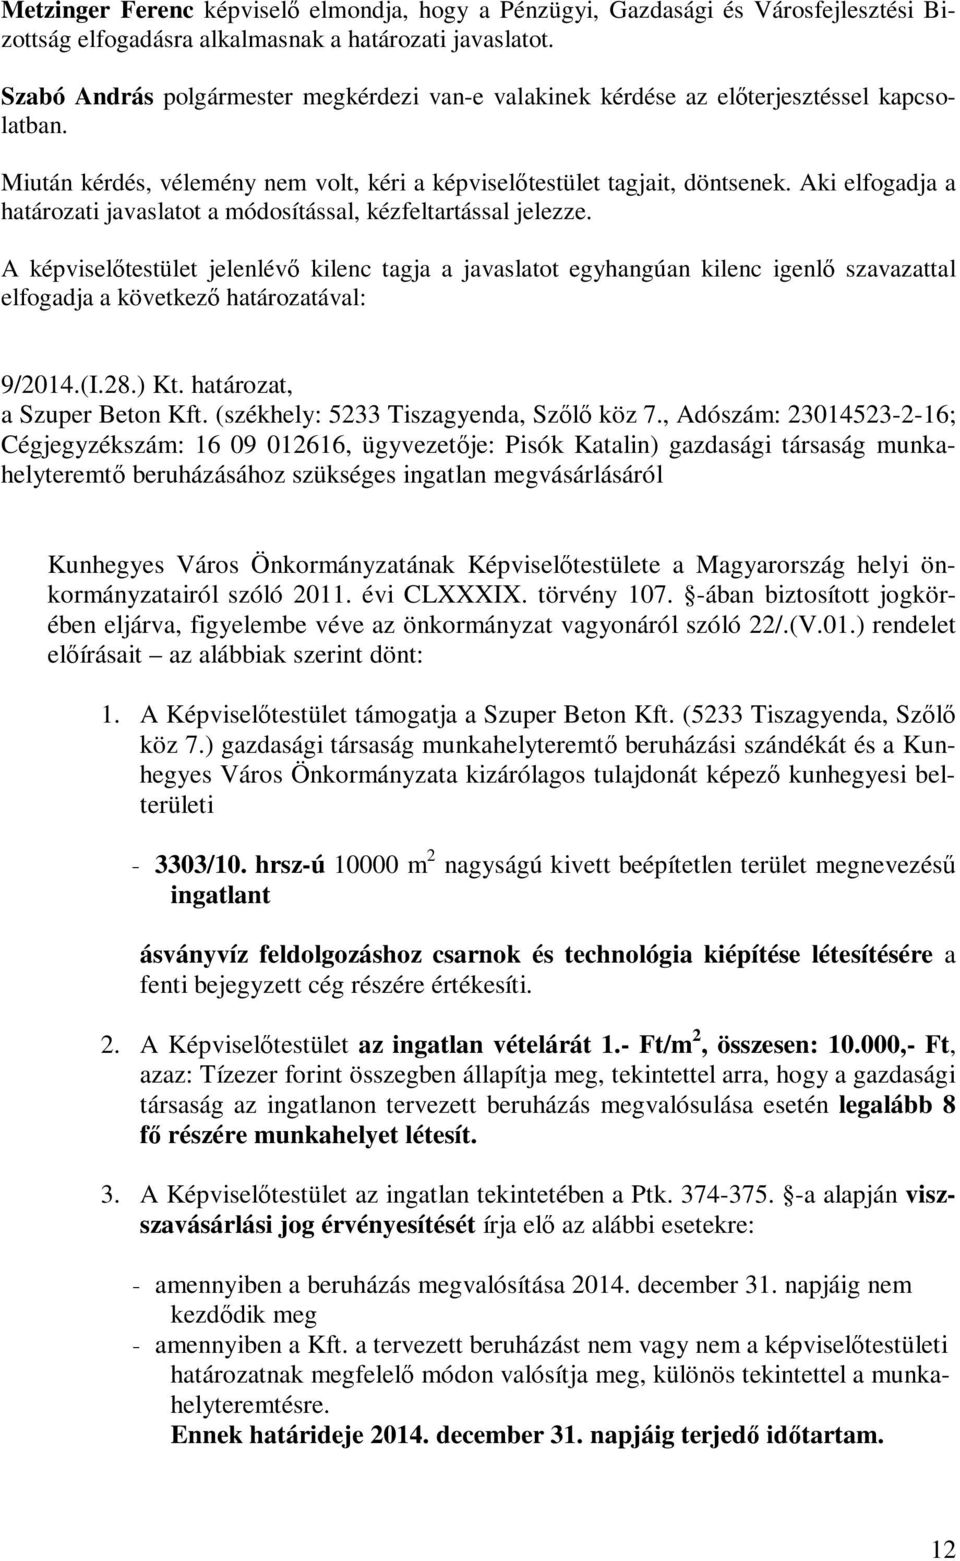 A képviselőtestület jelenlévő kilenc tagja a javaslatot egyhangúan kilenc igenlő szavazattal elfogadja a következő határozatával: 9/2014.(I.28.) Kt. határozat, a Szuper Beton Kft.